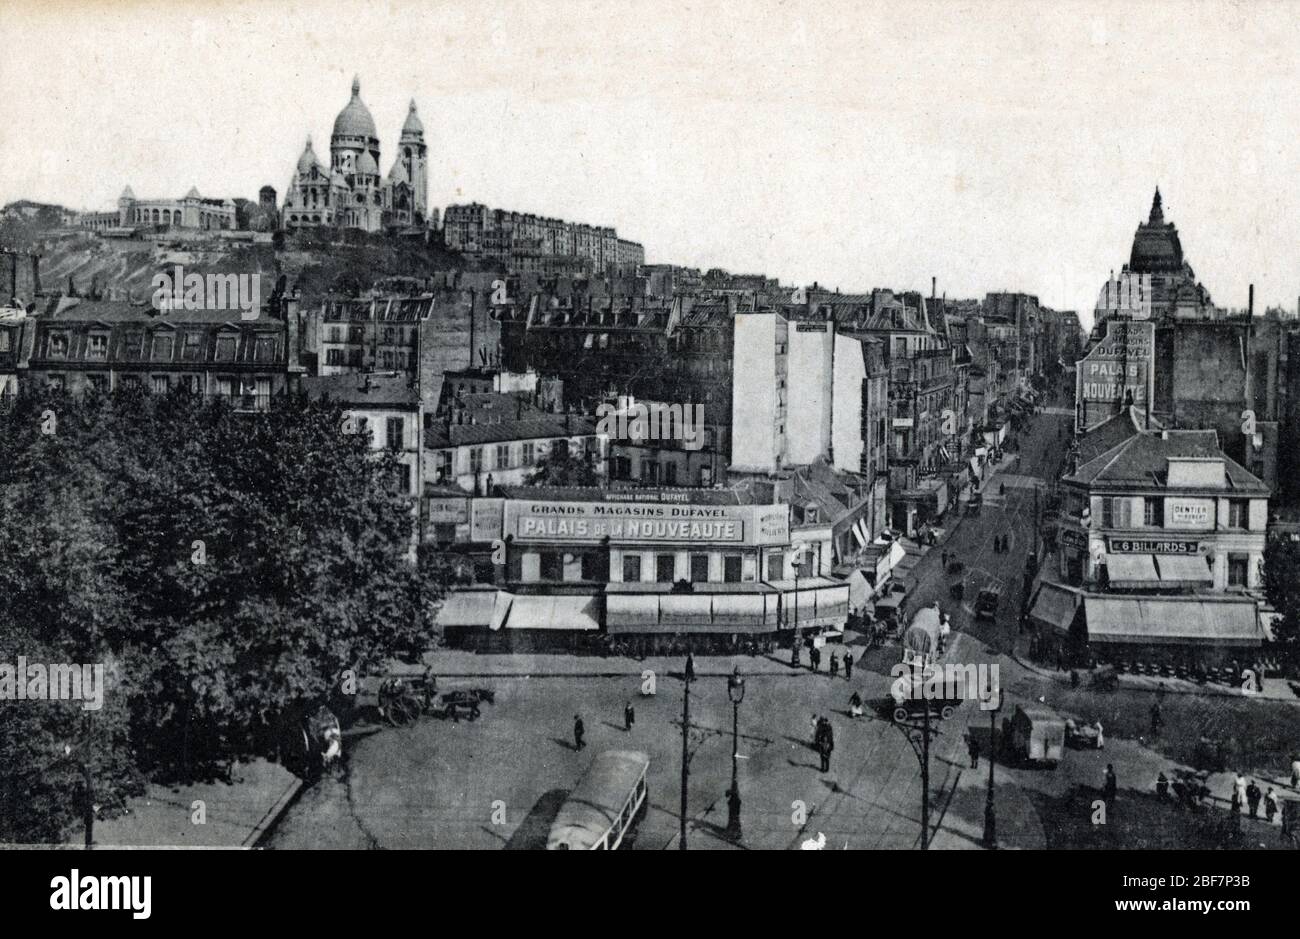 Vue sur la butte Montmartre, la basilique du sacre coeur, la rue clignancourt et la Place du Delta, au Premier plan les Grands Magasins Dufayel (palai Foto Stock